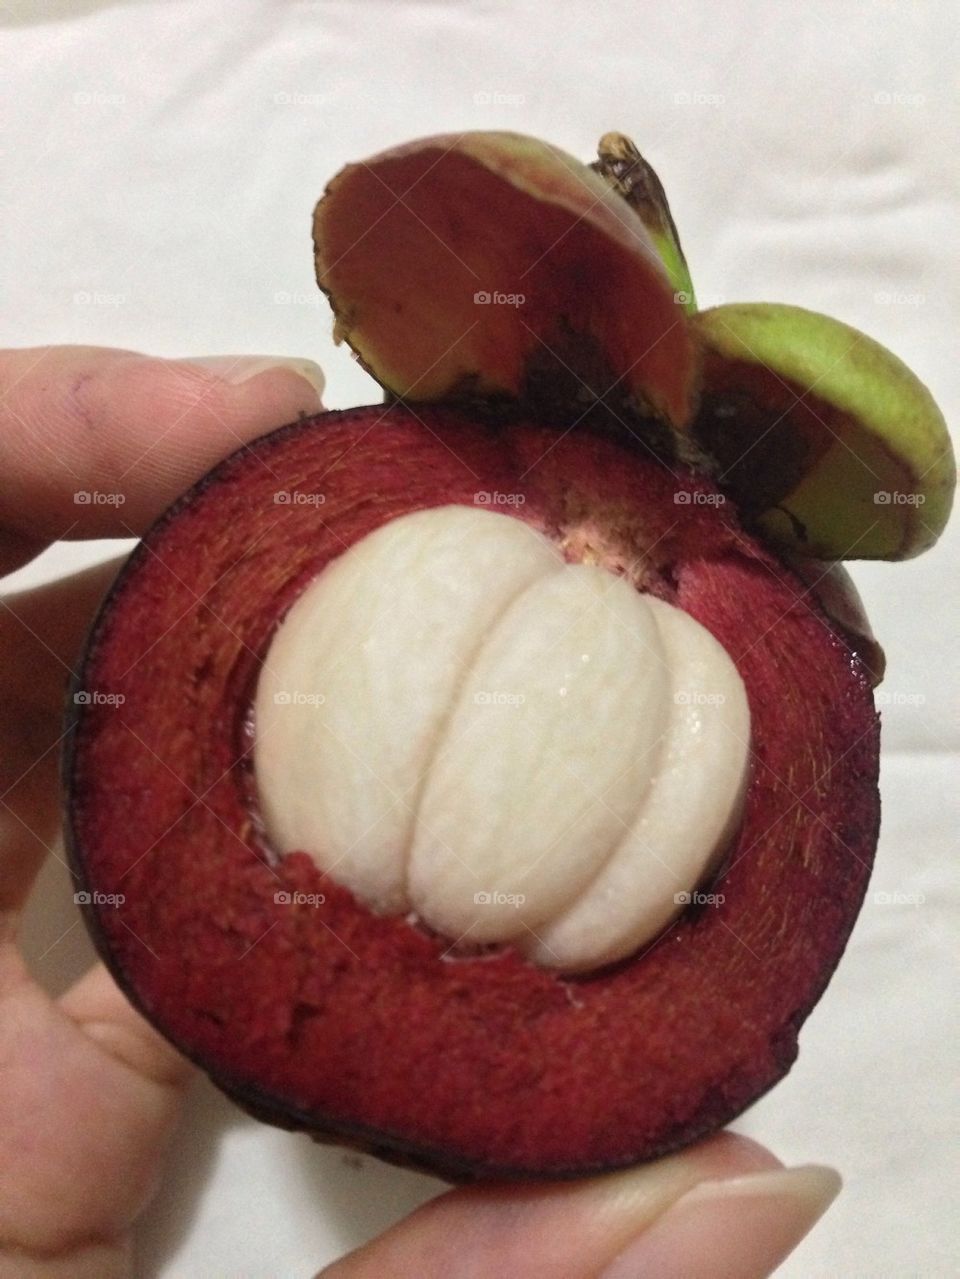 A look inside a mangosteen